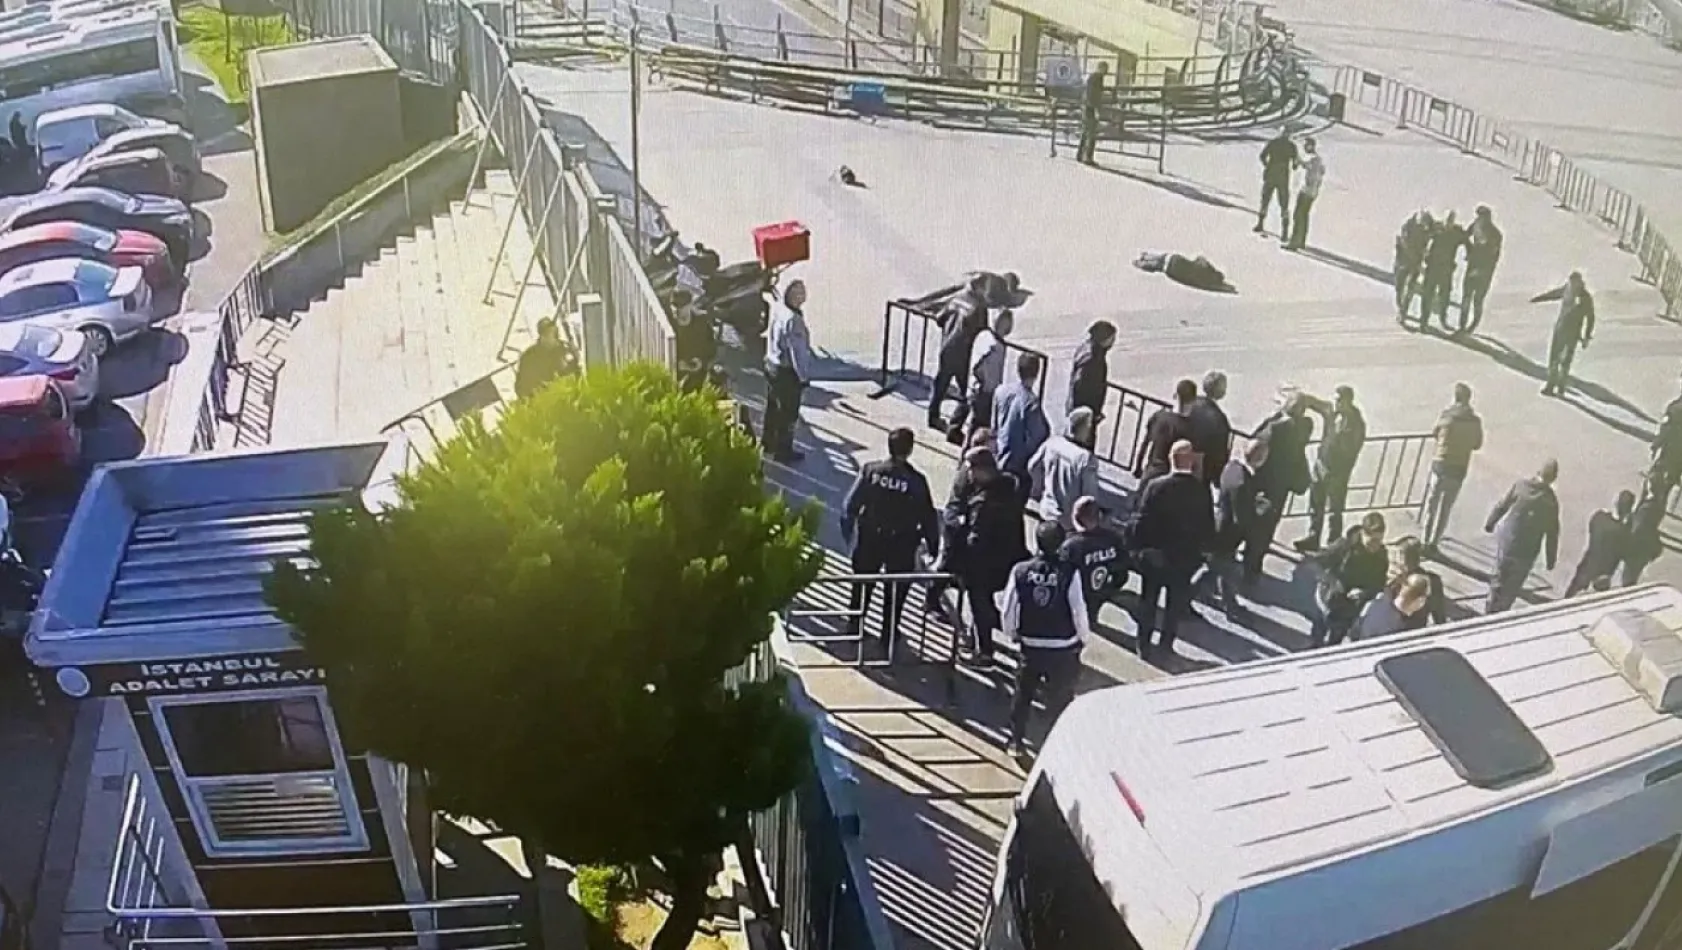 Çağlayan Adliyesi'nde polis noktasına silahlı saldırı: 2 ölü, 6 yaralı